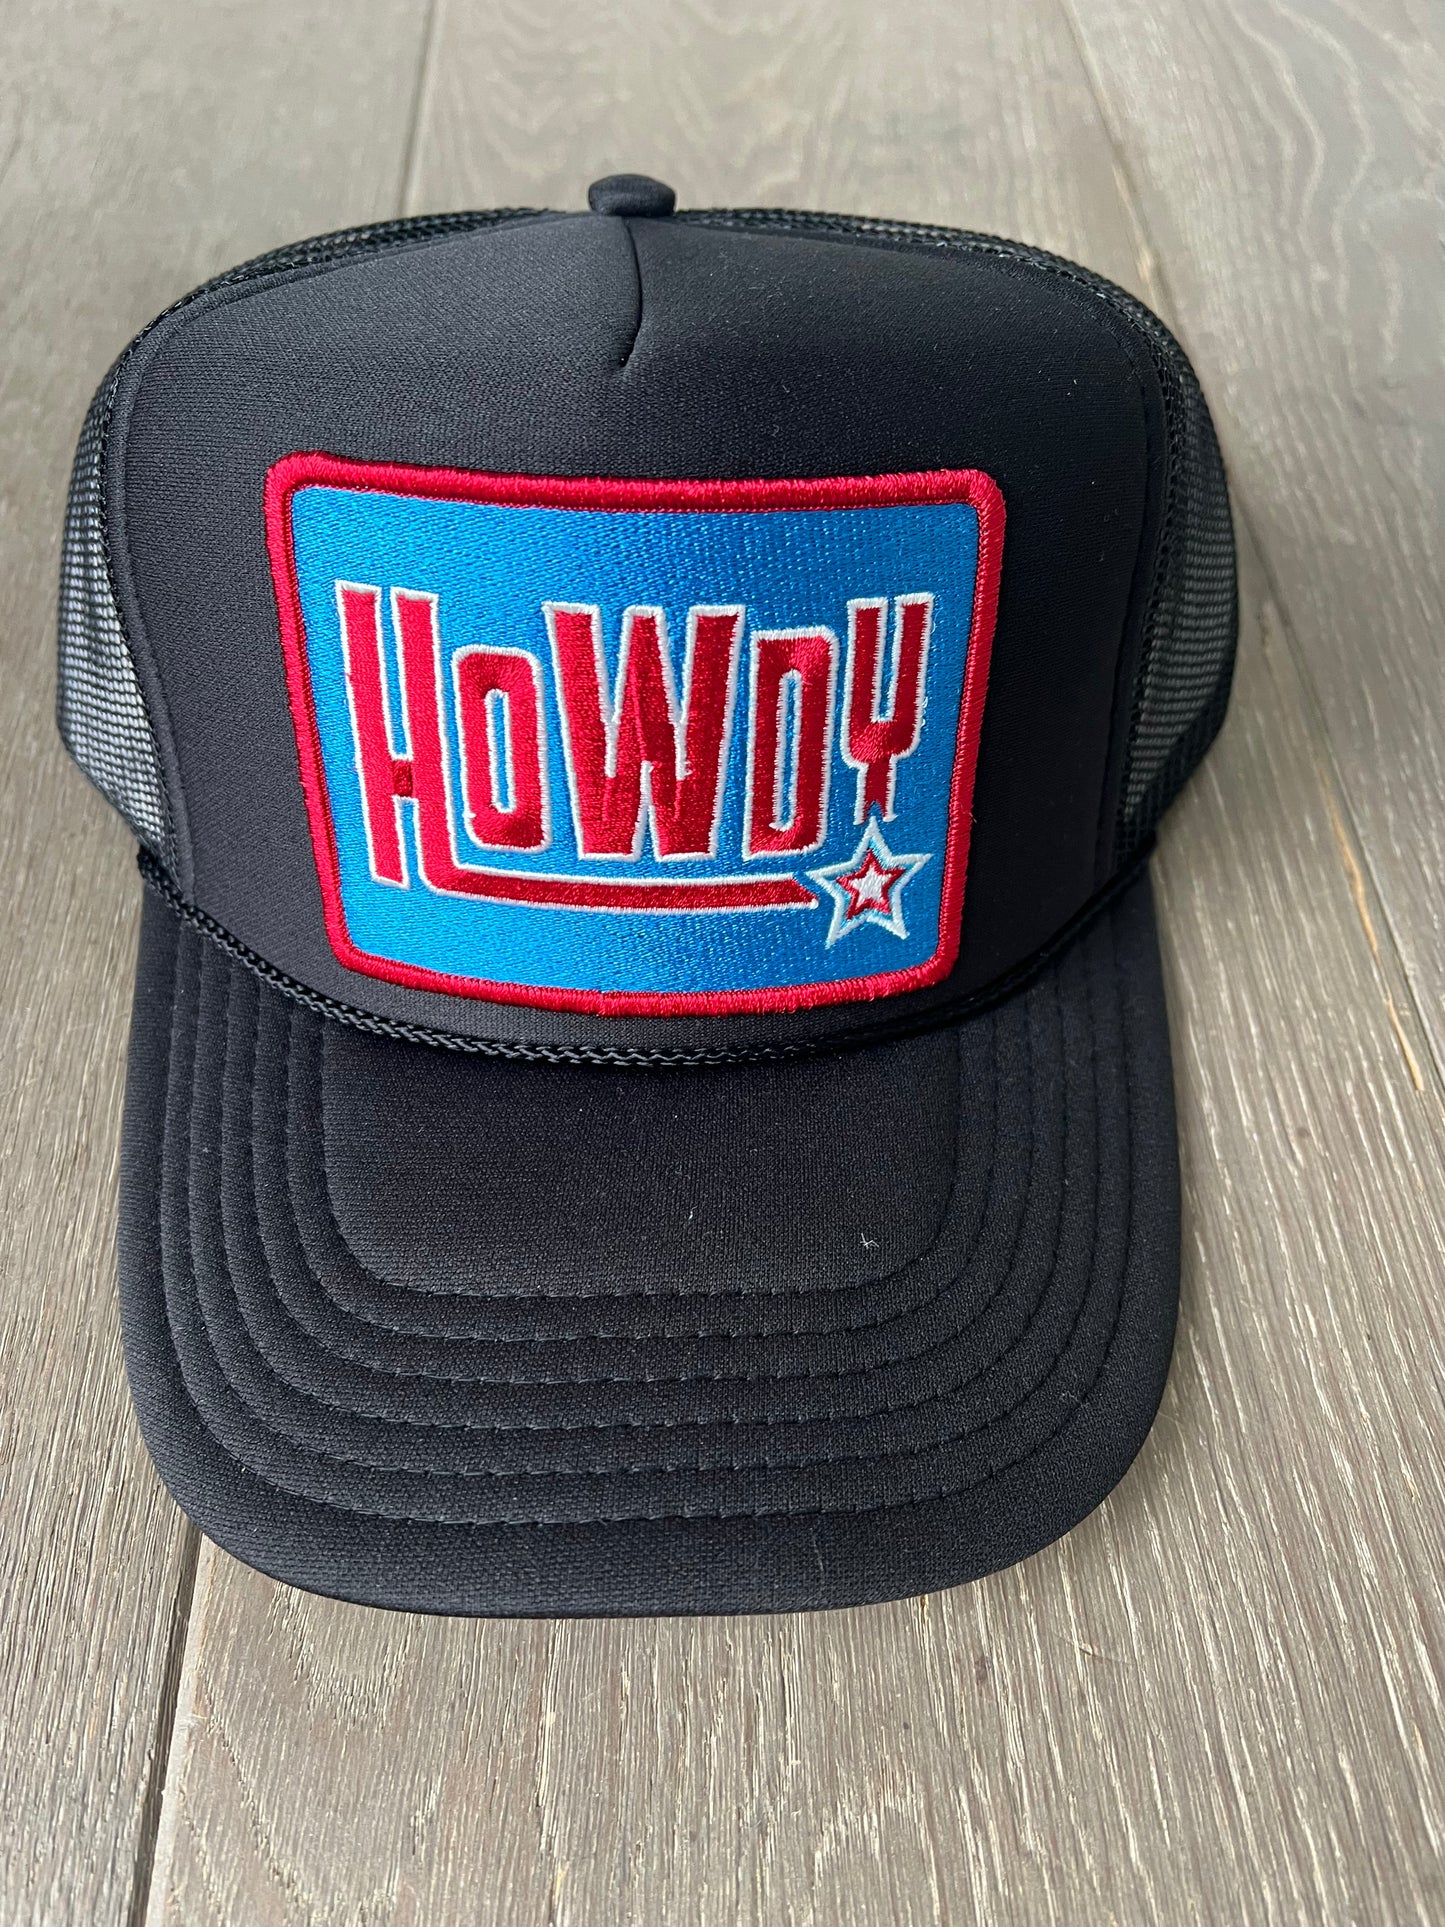 Port Sandz "Howdy" Hat